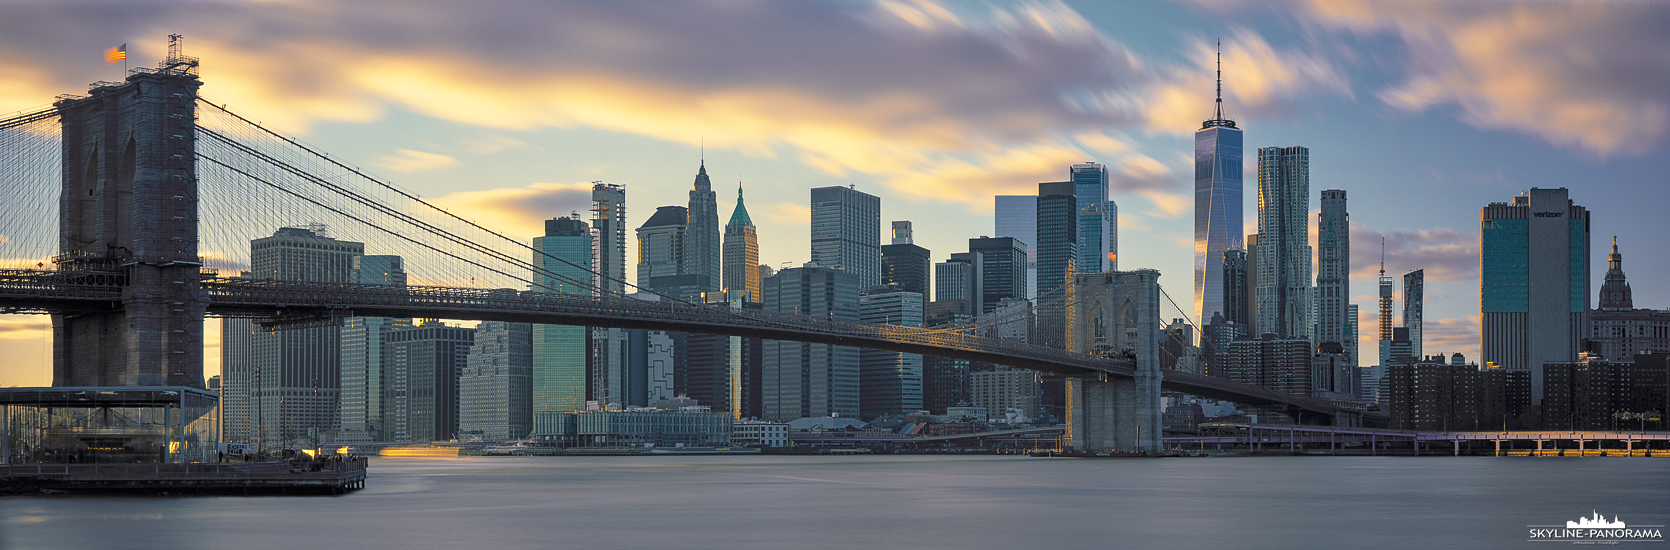 6x17 New York - Das bekannte Panorama der Skyline von New York zum Sonnenuntergang, diesmal als Langzeitbelichtung mit ziehenden Wolken.